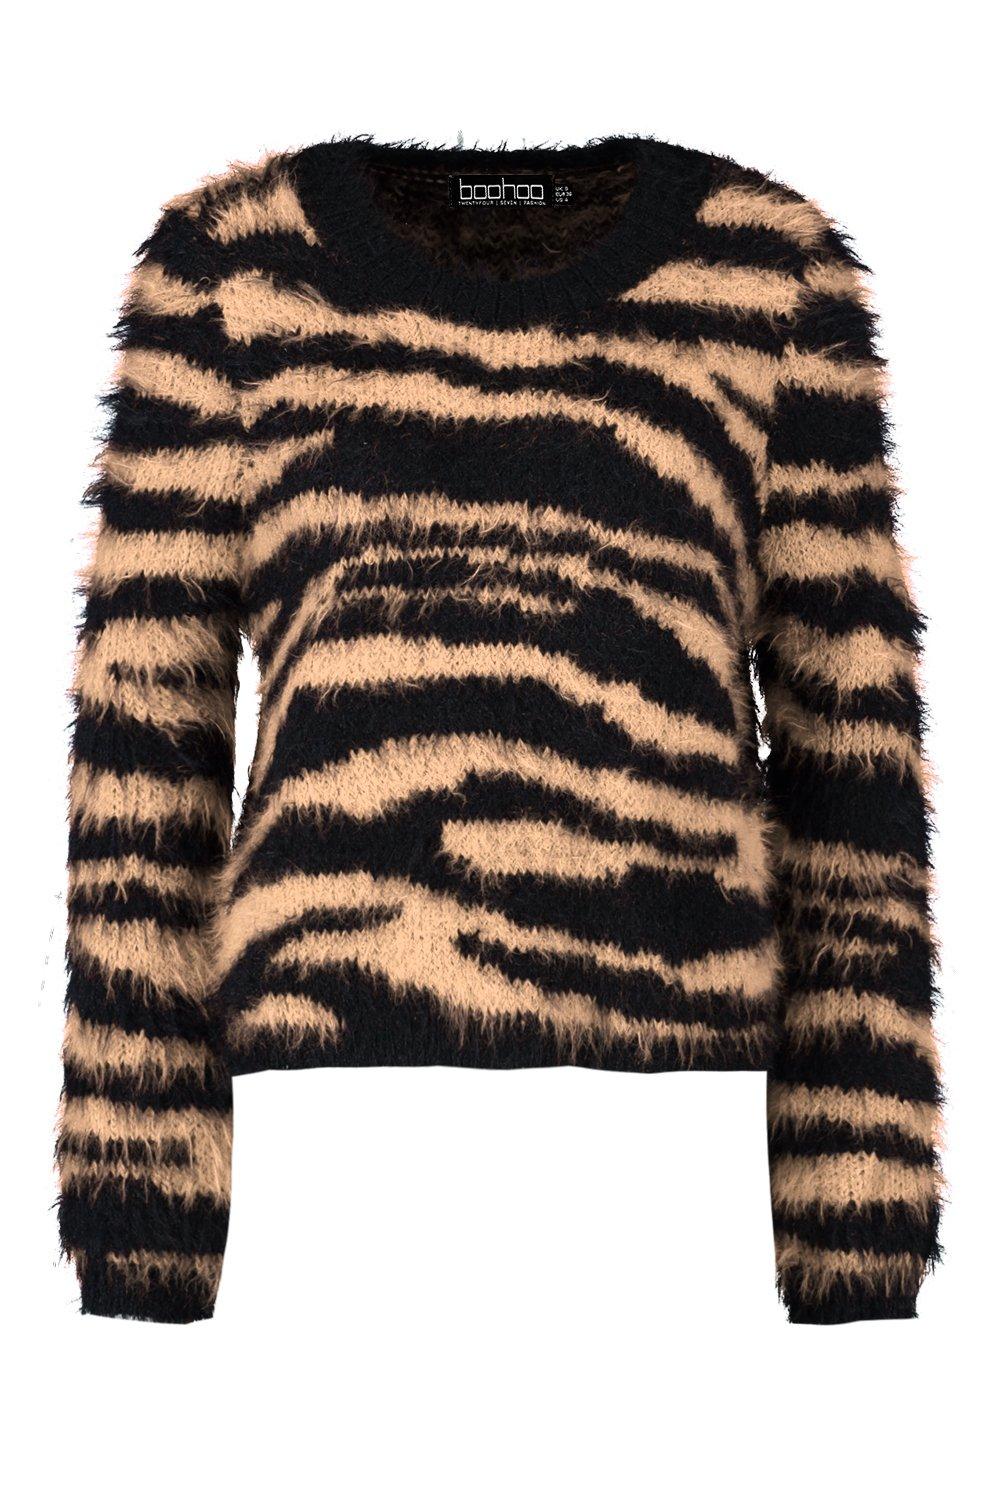 Très Bien - Stüssy Printed Fur Sweater Tiger